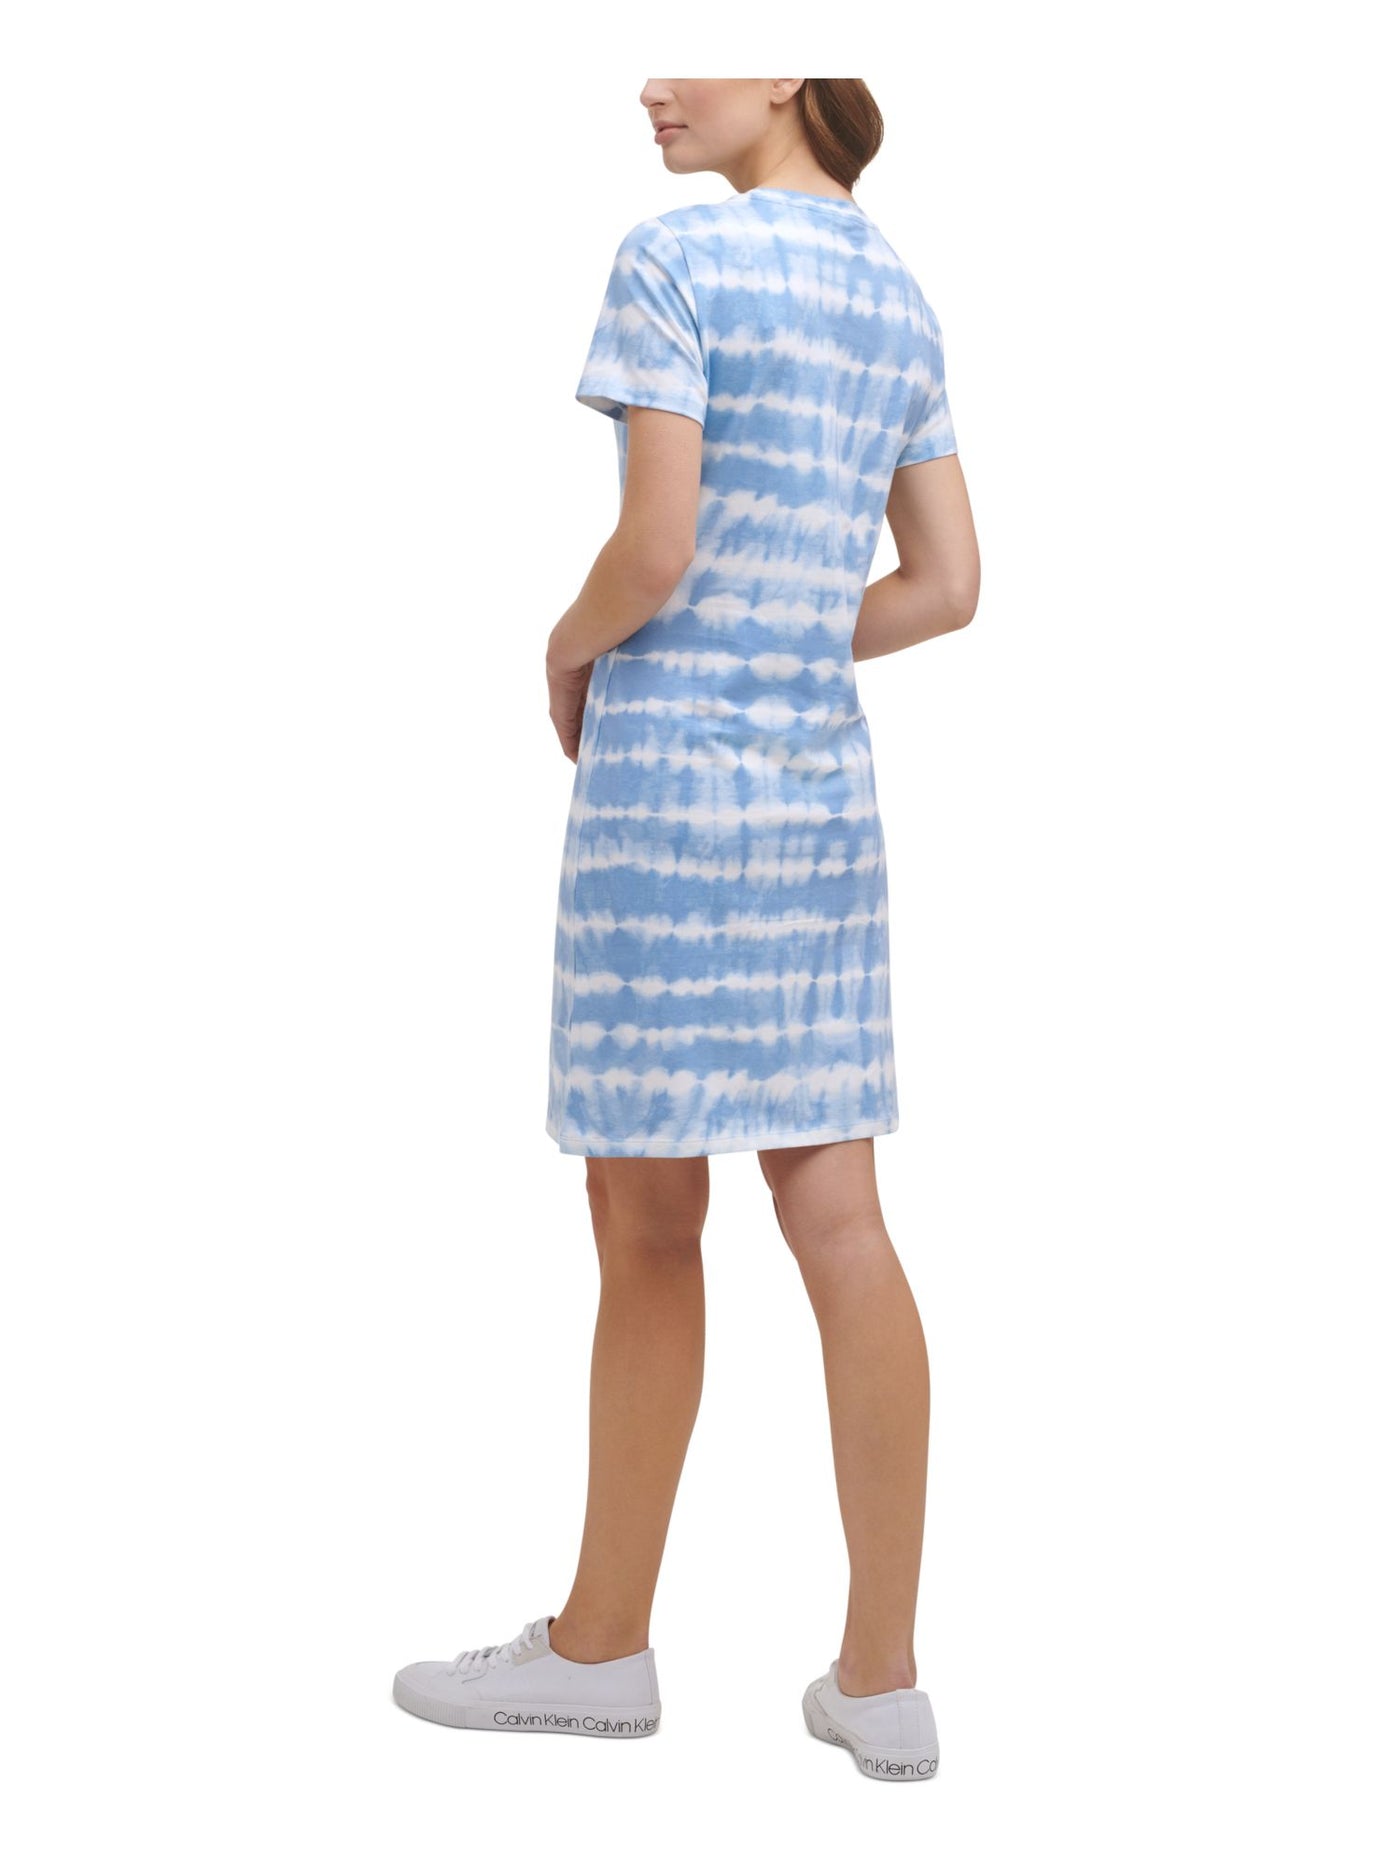 CALVIN KLEIN Womens Blue Glitter T-shirt Tie Dye Short Sleeve Crew Neck Above The Knee Dress XS